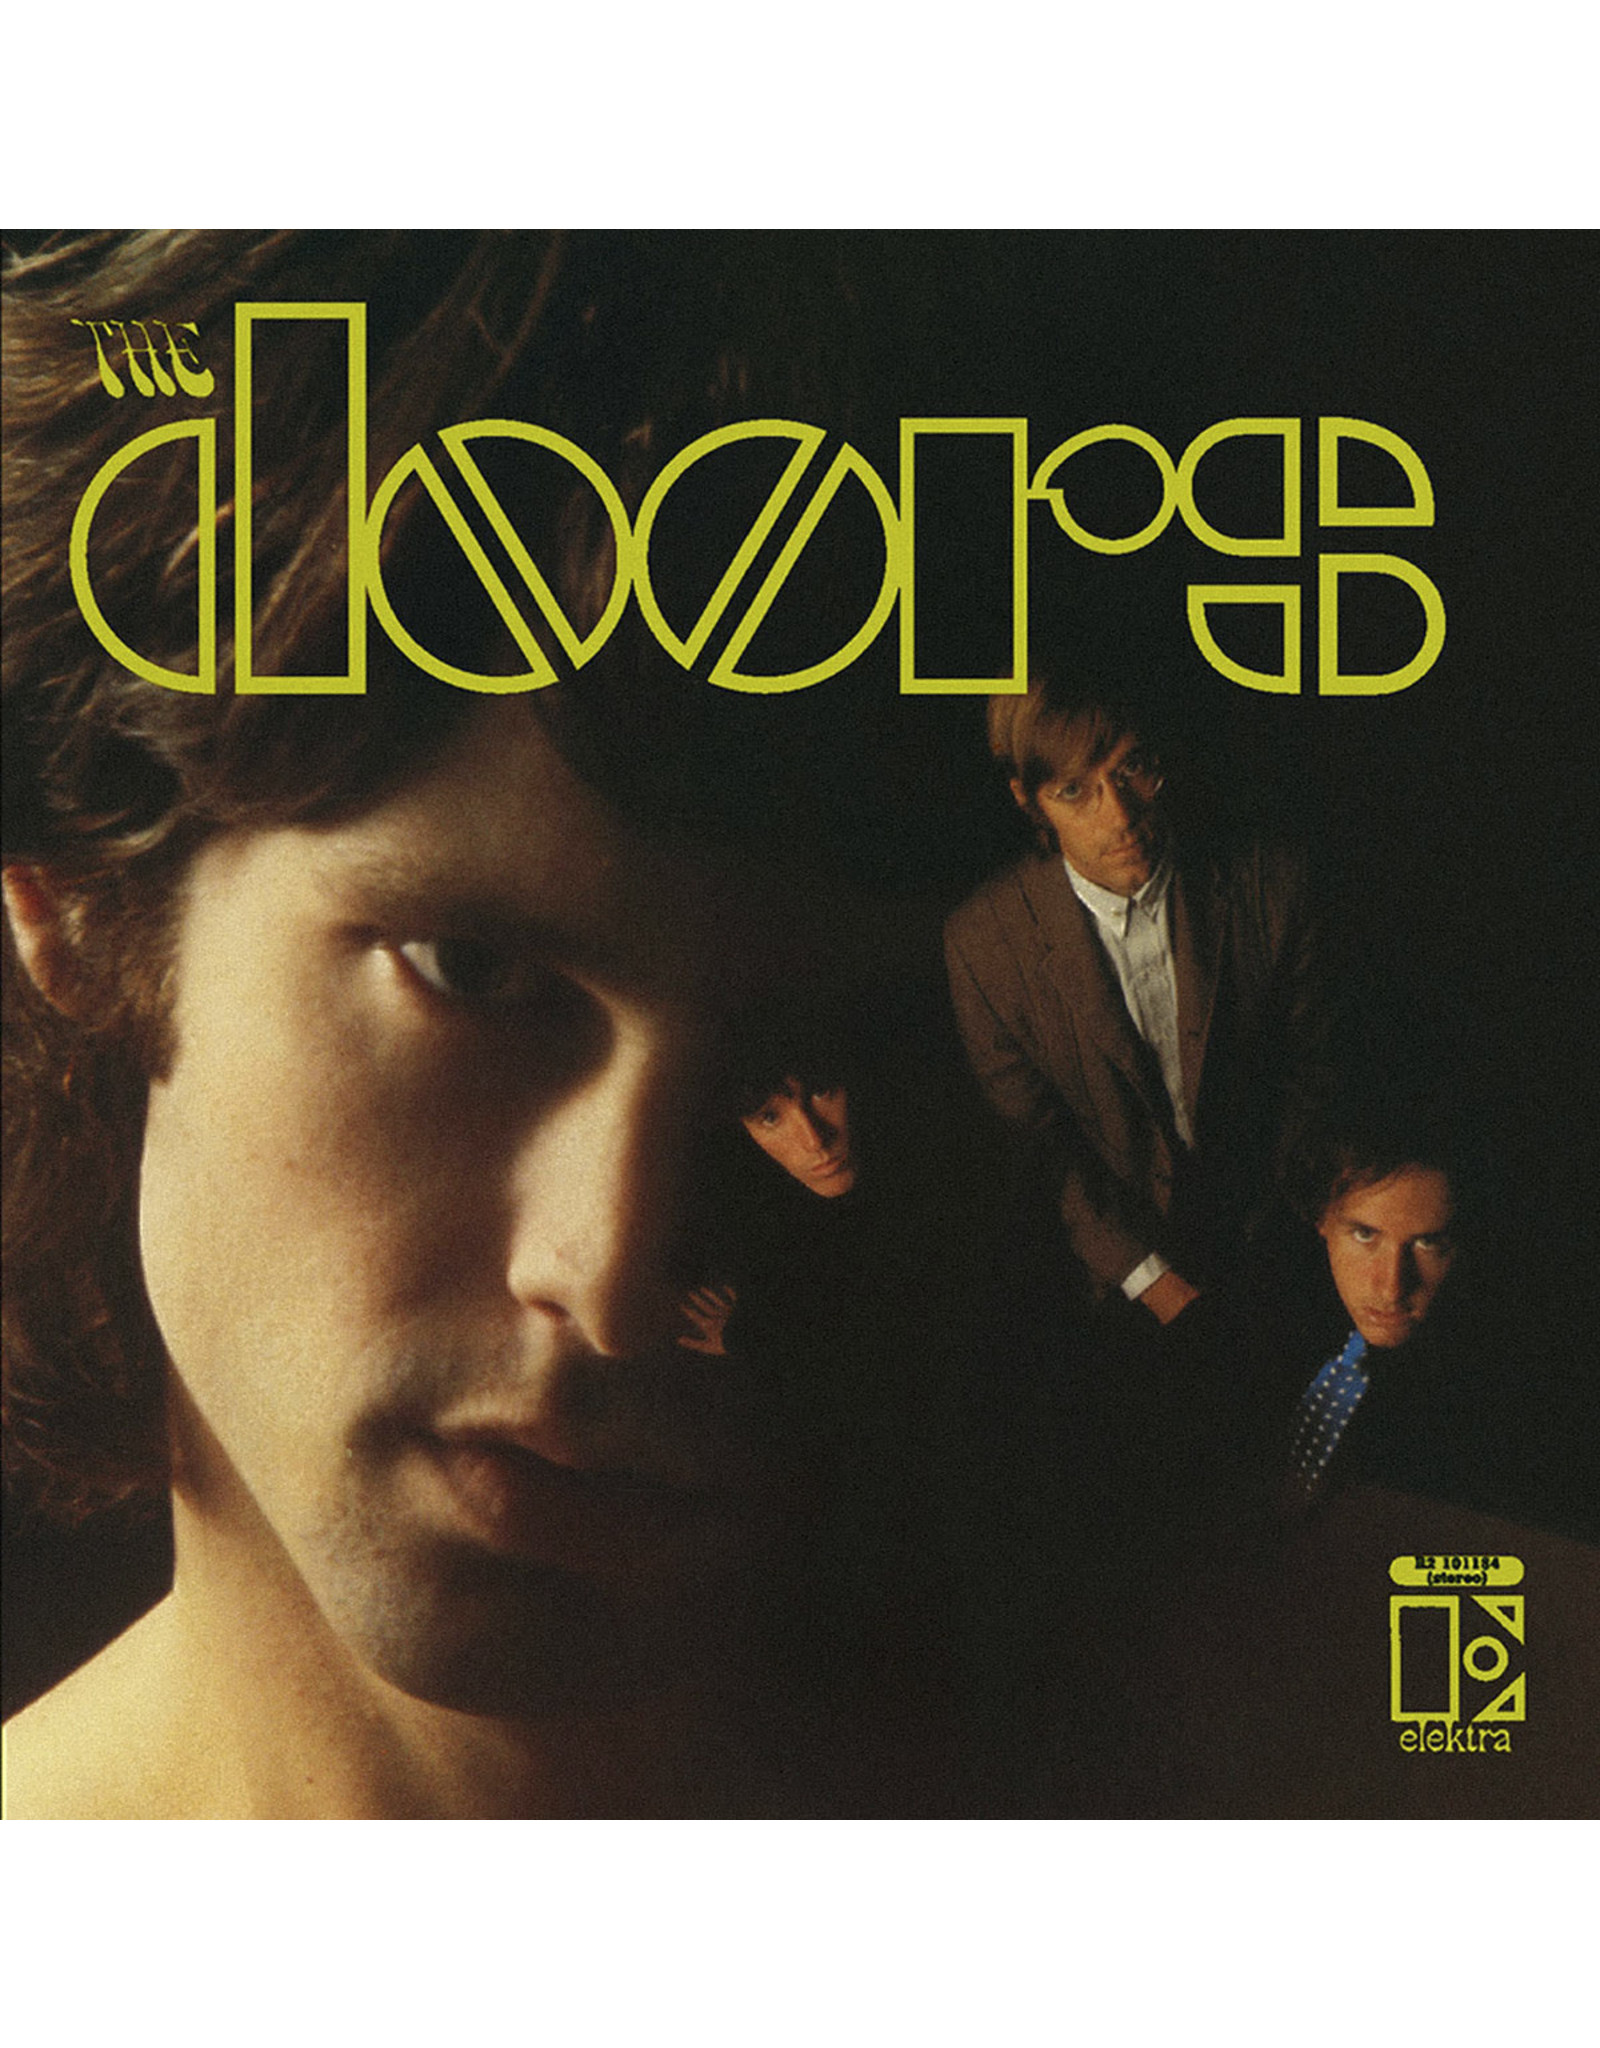 Doors - The Doors (Stereo Mix)